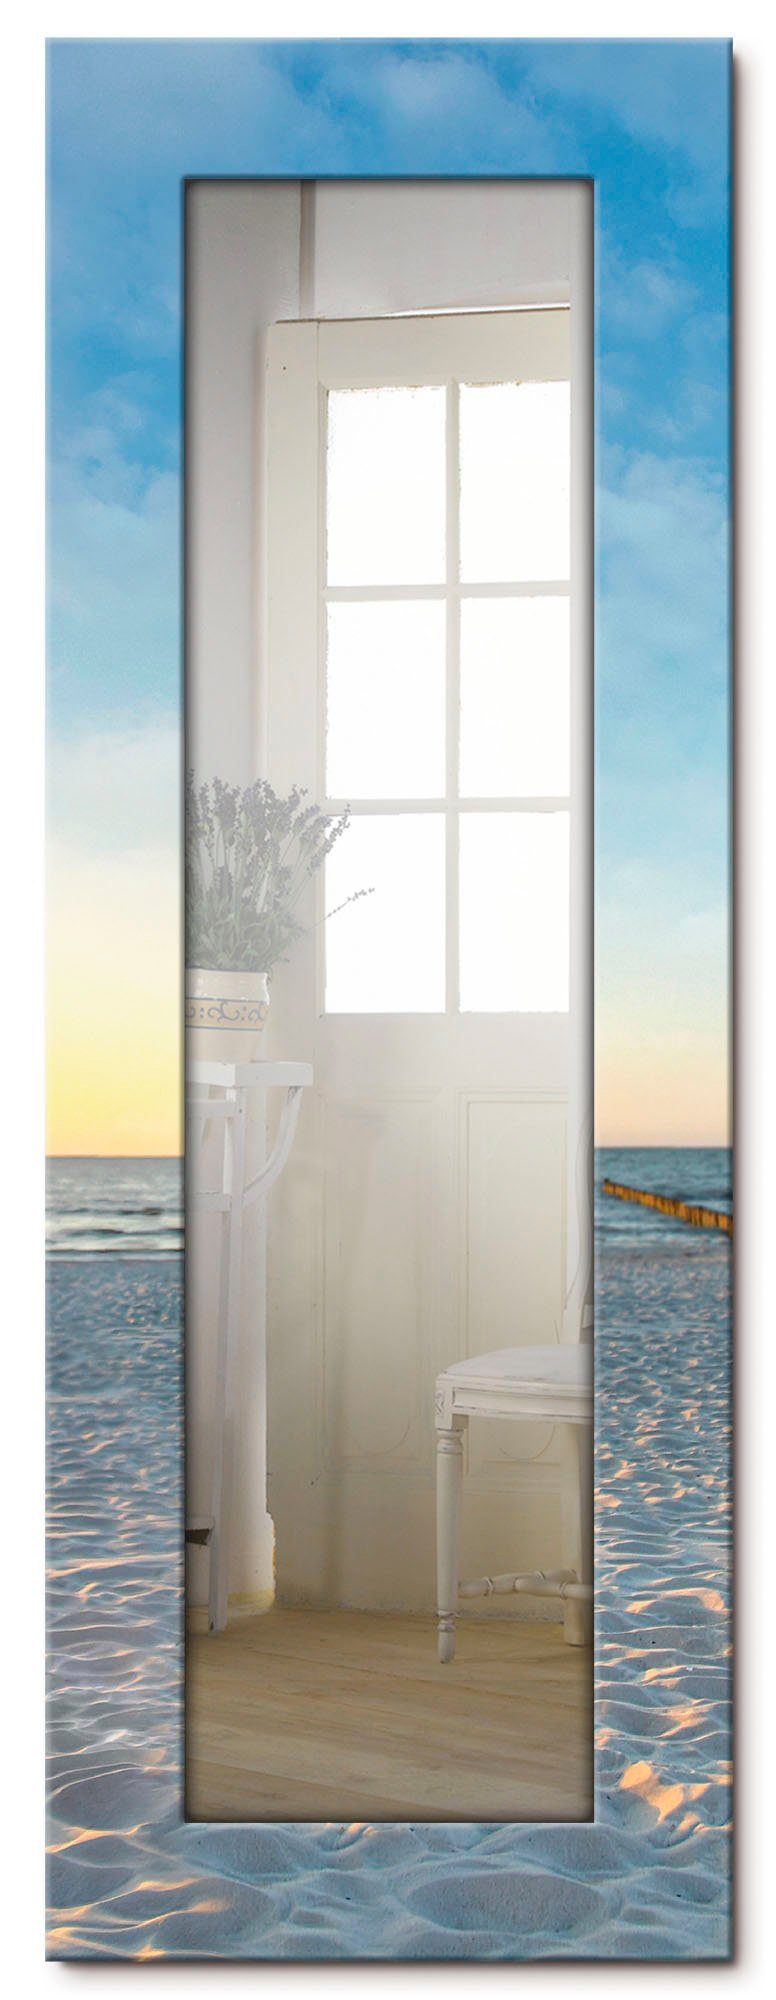 Artland Sierspiegel Ostsee7 - strandstoel ingelijste spiegel voor het hele lichaam met motiefrand, geschikt voor kleine, smalle hal, halspiegel, mirror spiegel omrand om op te hang